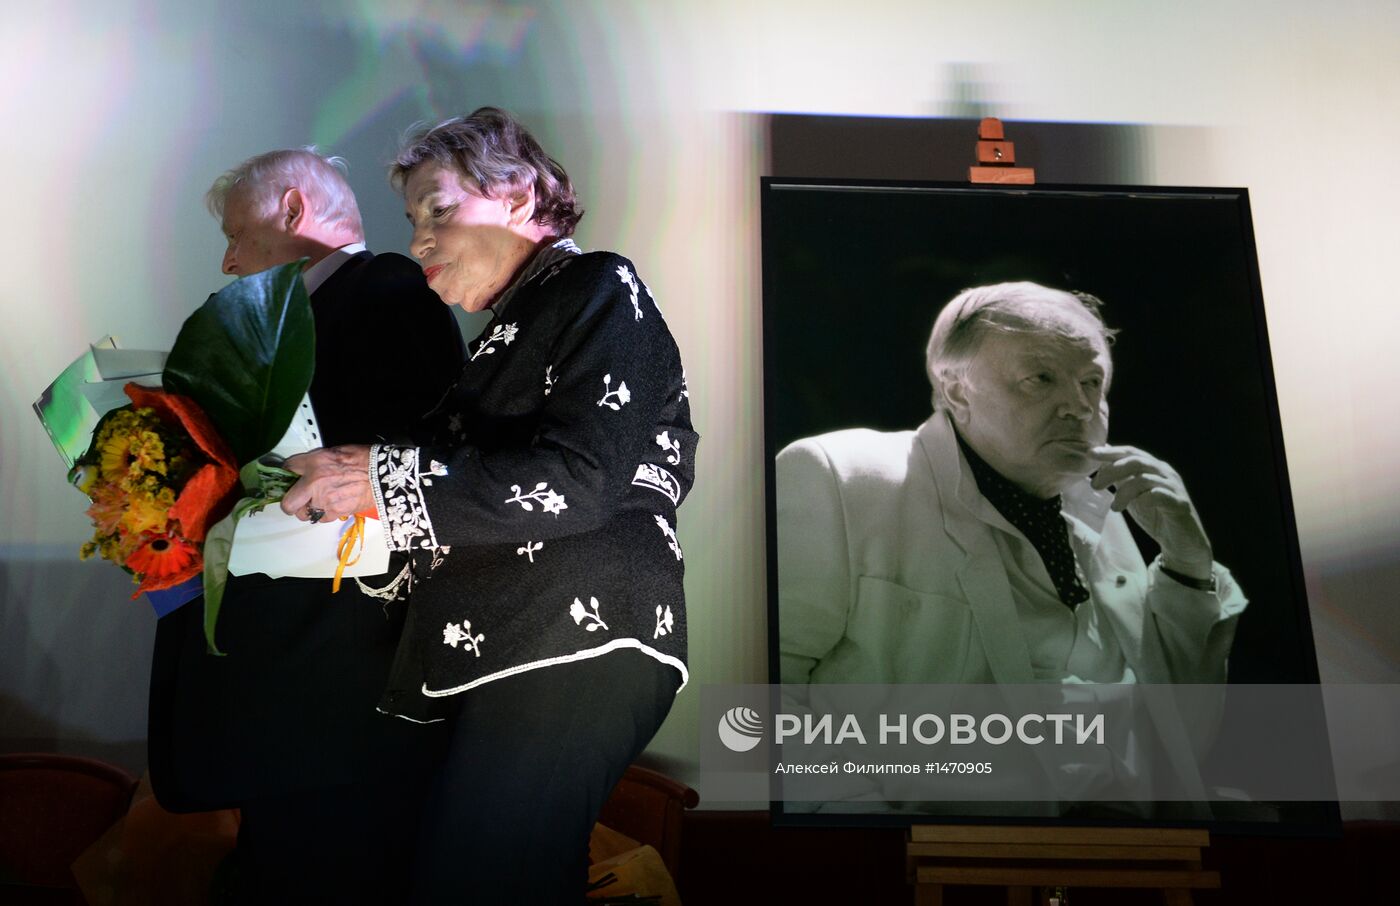 Вручение премии "Парабола" имени Андрея Вознесенского